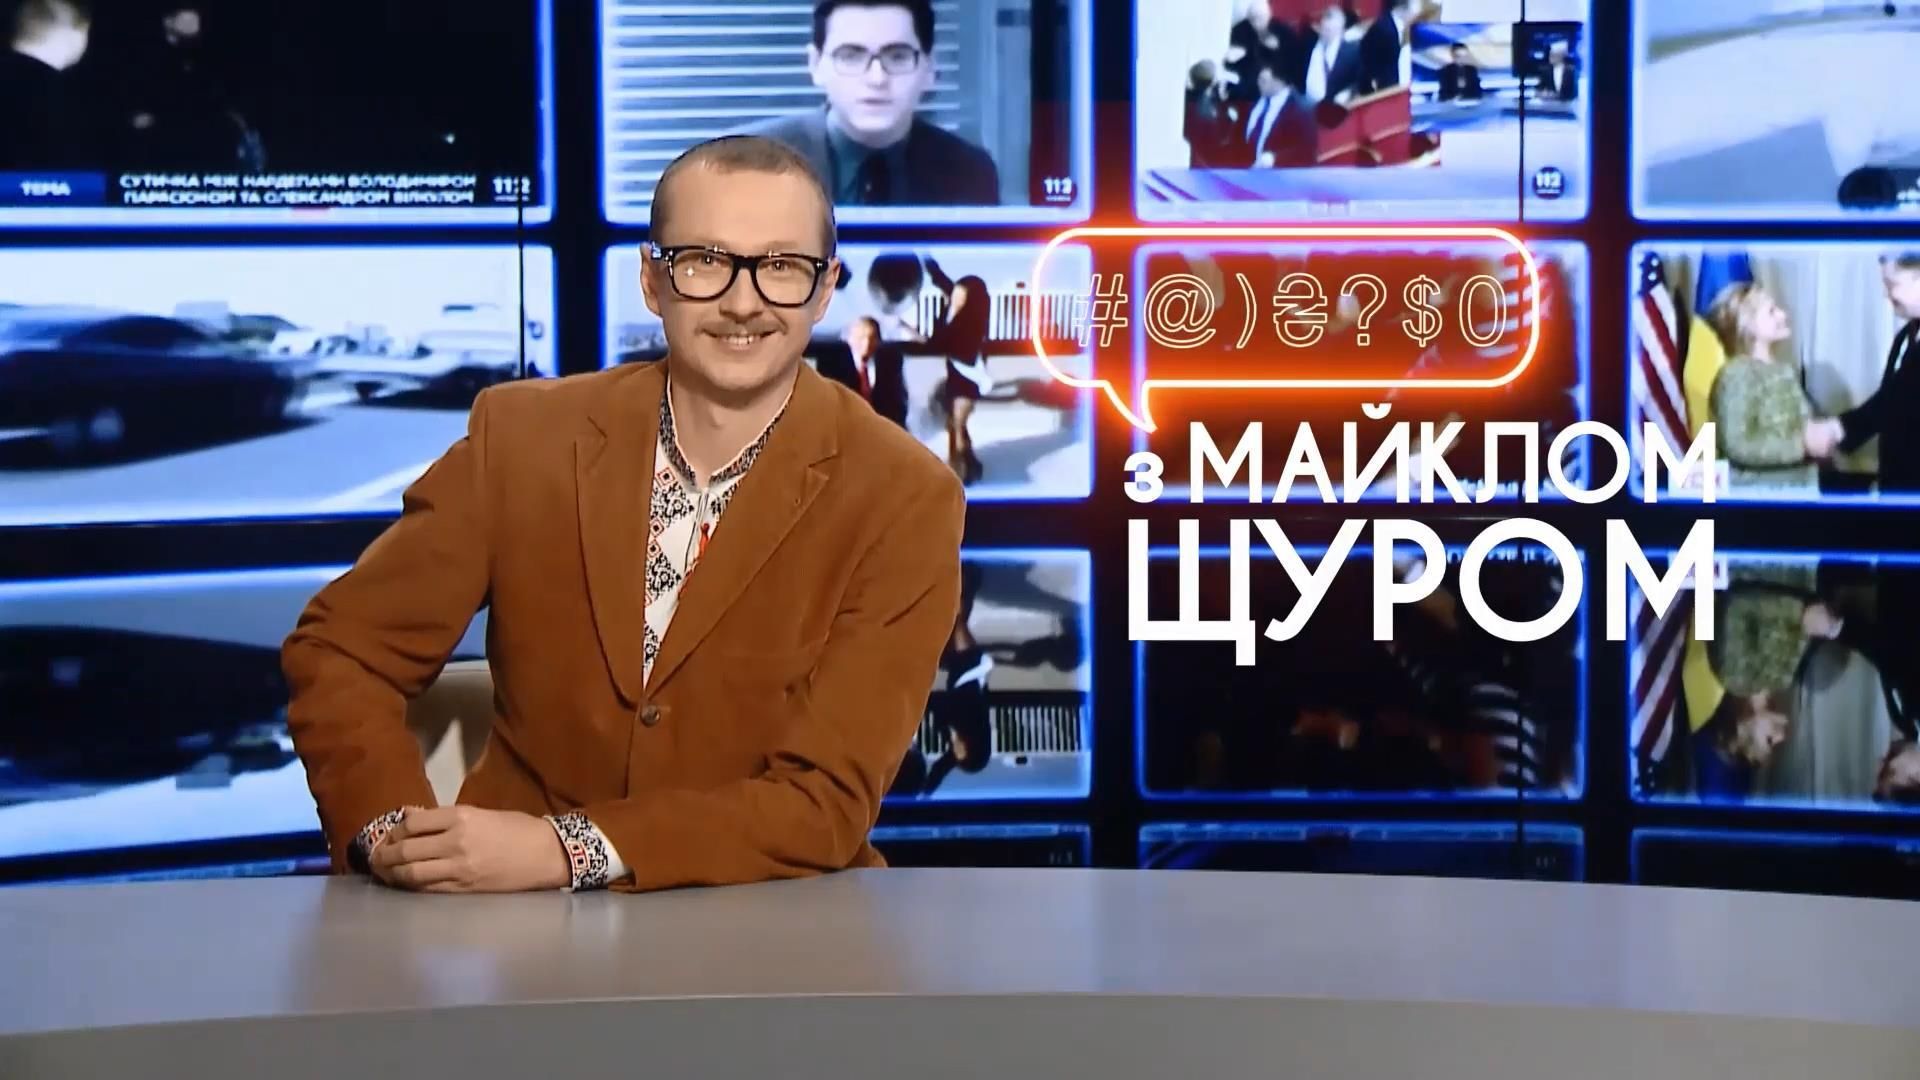 Кучма в бассейне и новый логотип Евровидения, Кучма в басс смотрите в программе с Майклом Щуром